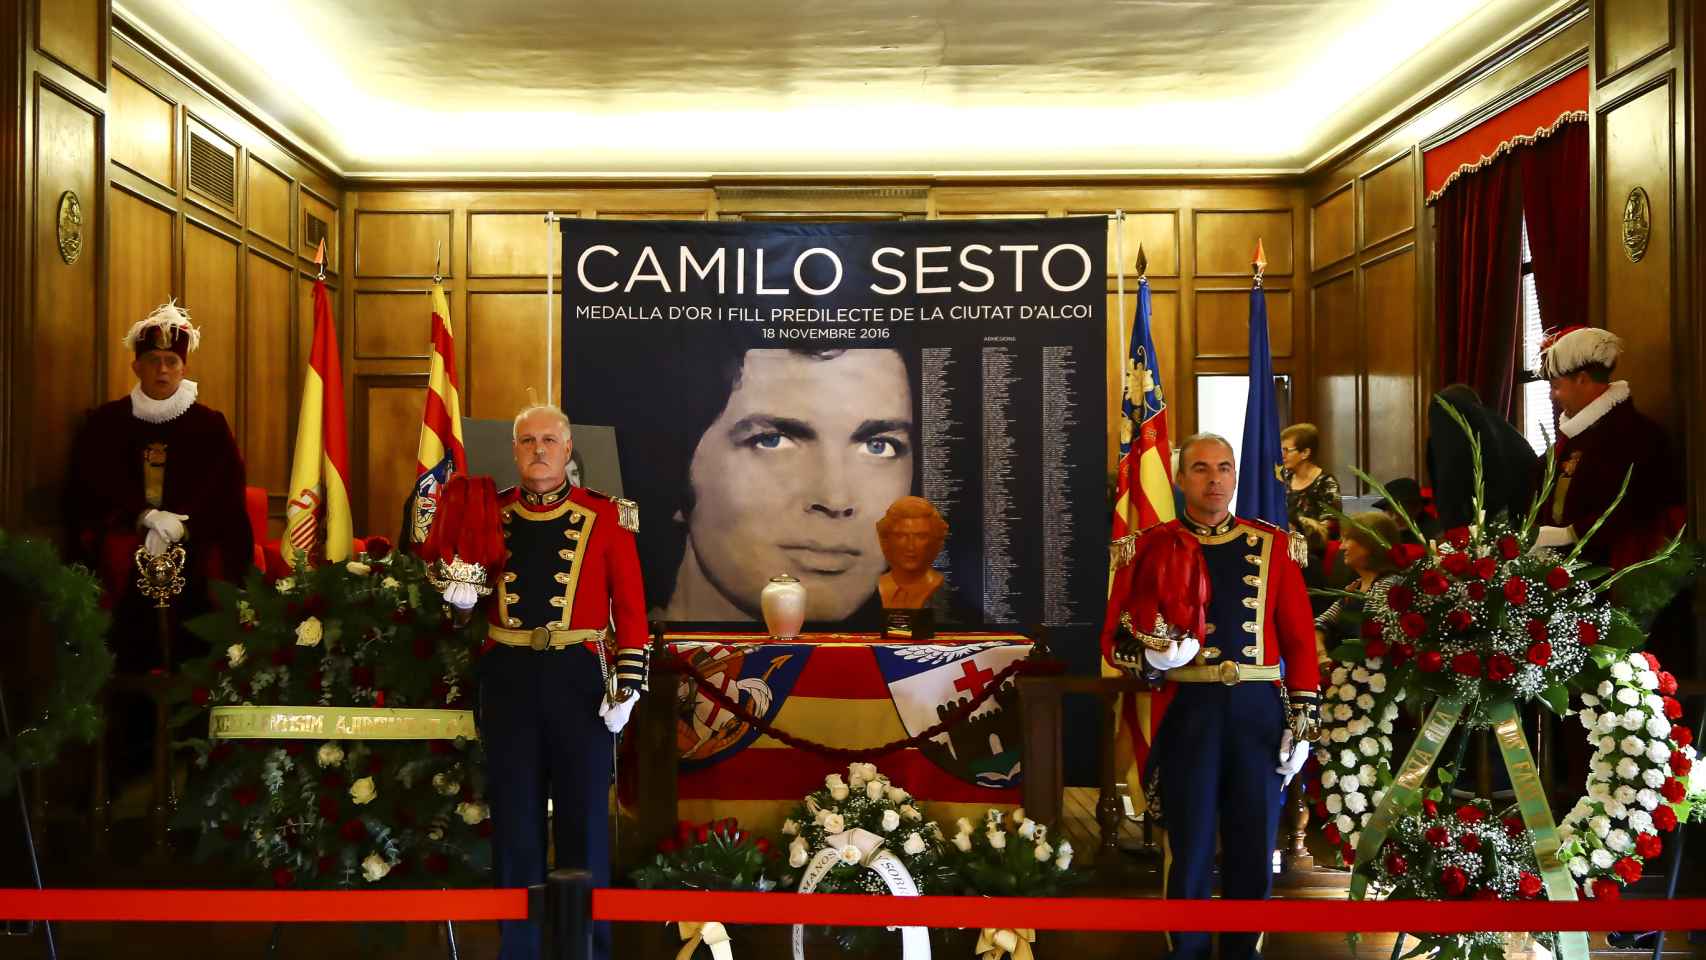 El salón de plenos del ayuntamiento de Alcoy se vestía de recuerdos del cantante Camilo Sesto.